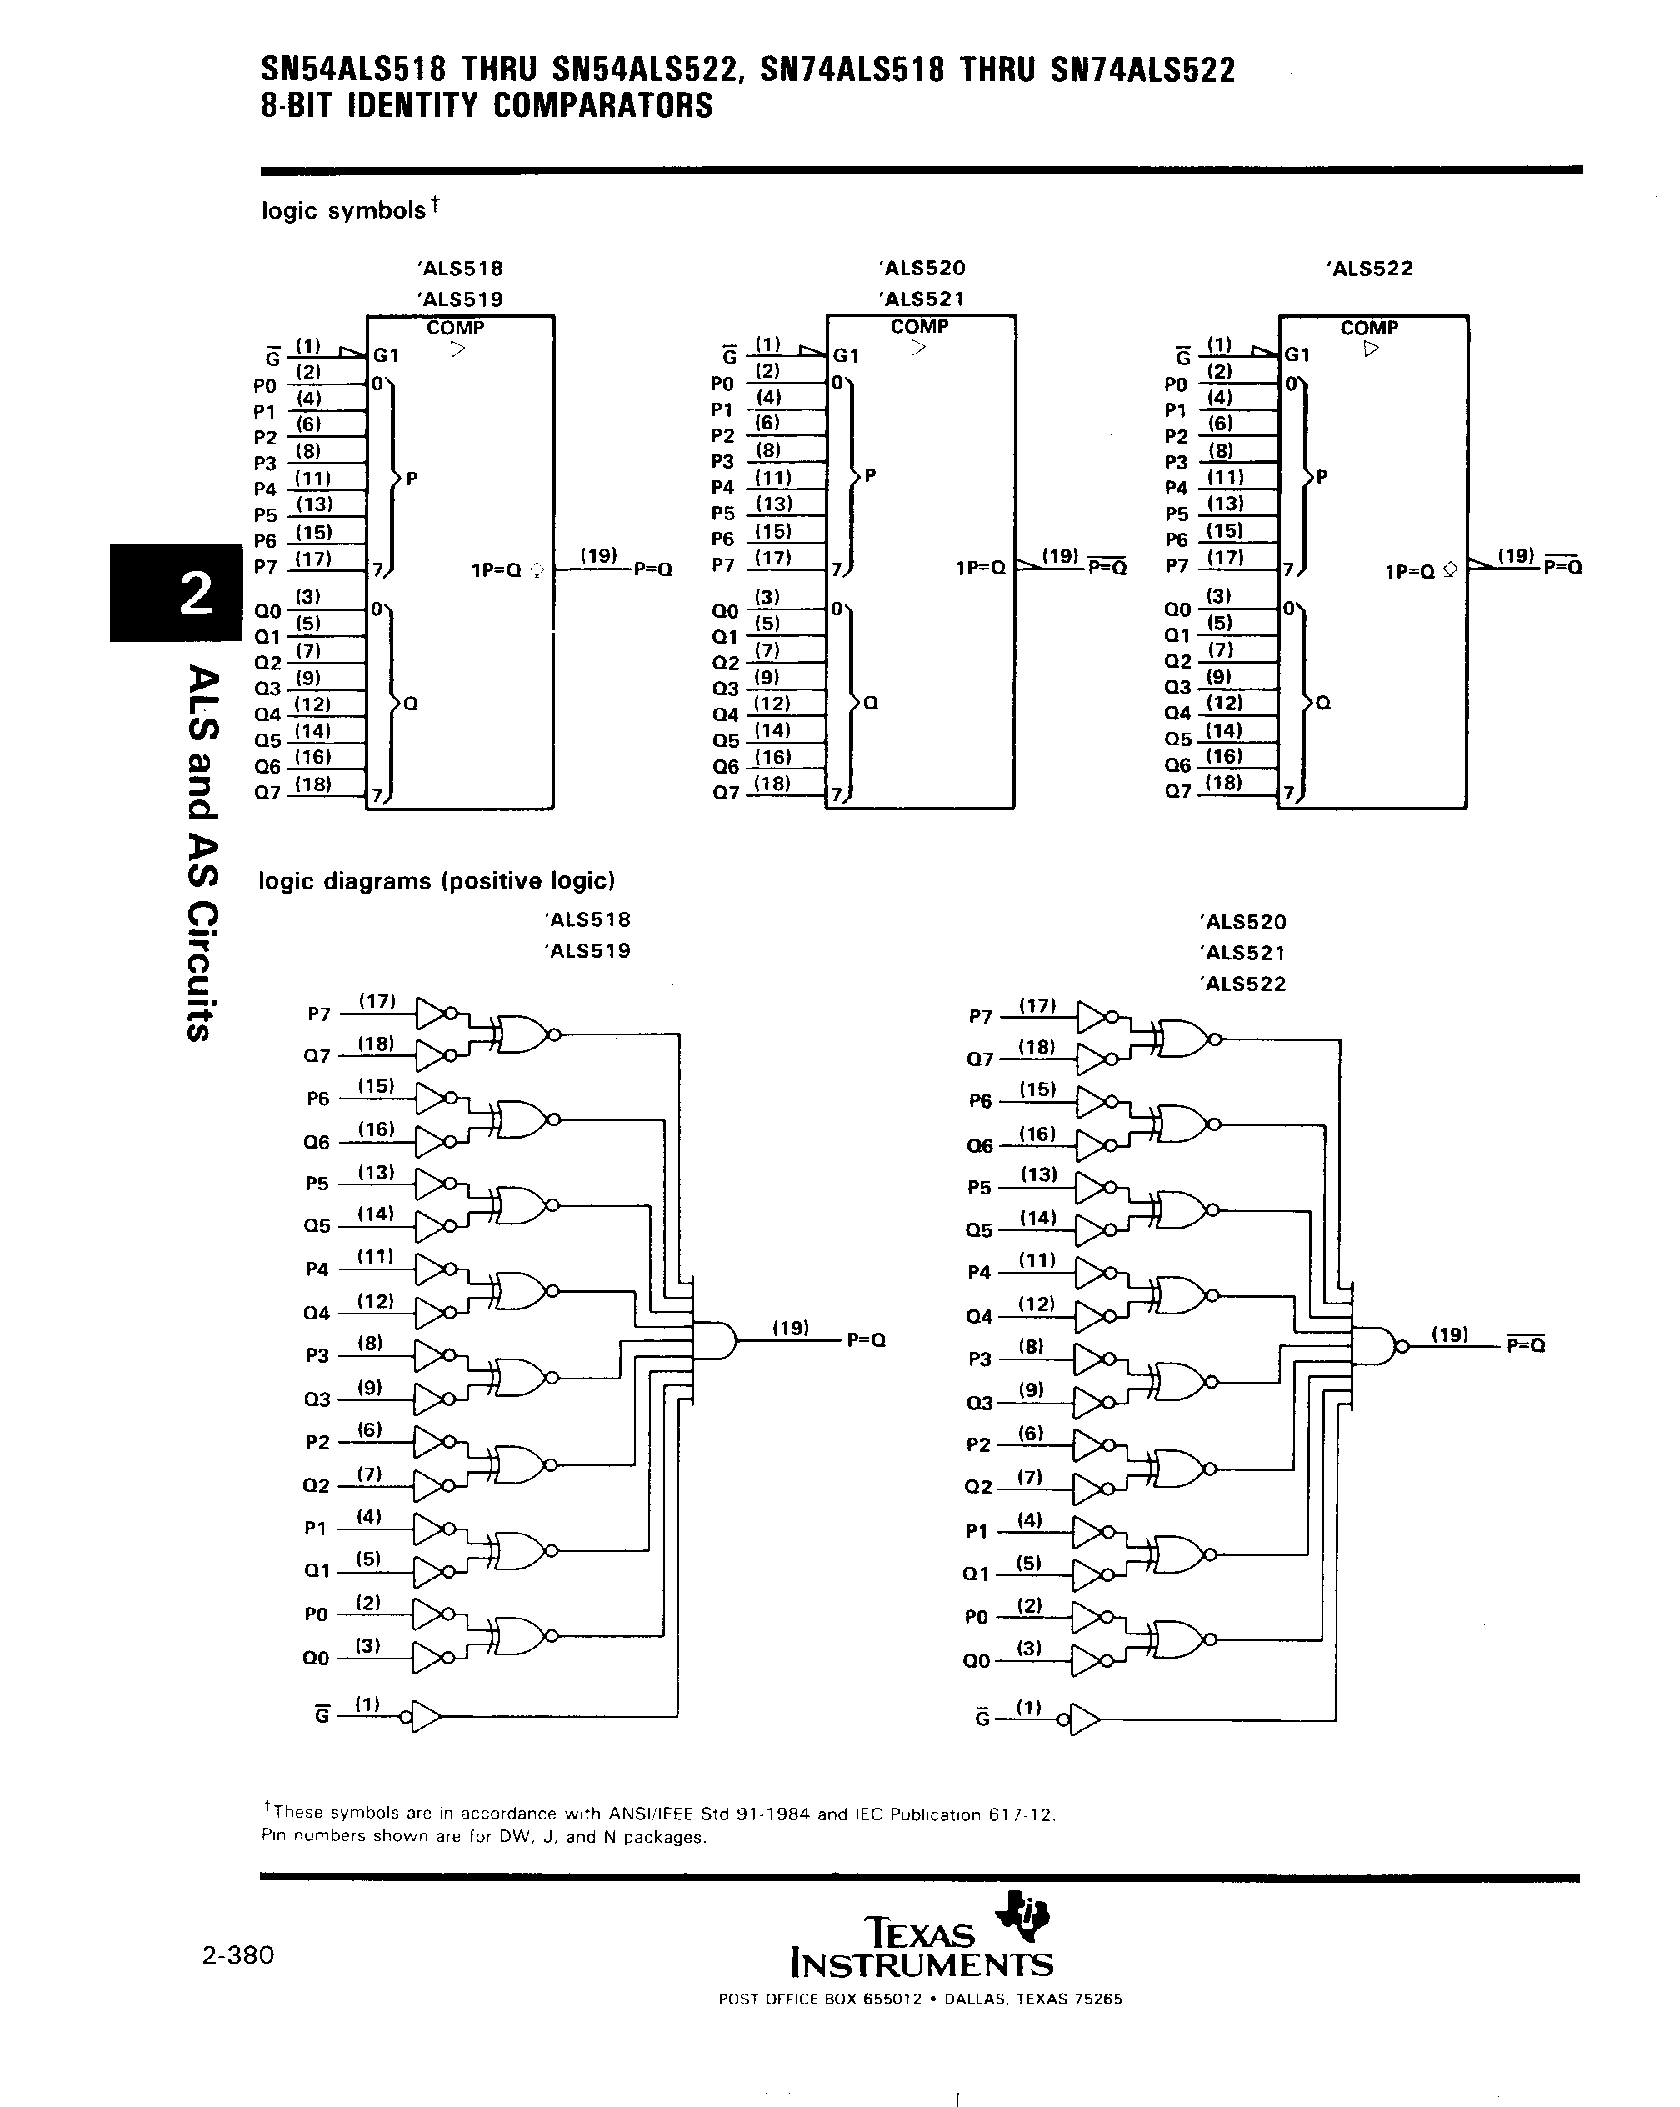 Datasheet SN74ALS522 - (SN74ALS518 - SN74ALS522) 8 Bit Identity Comparators page 2